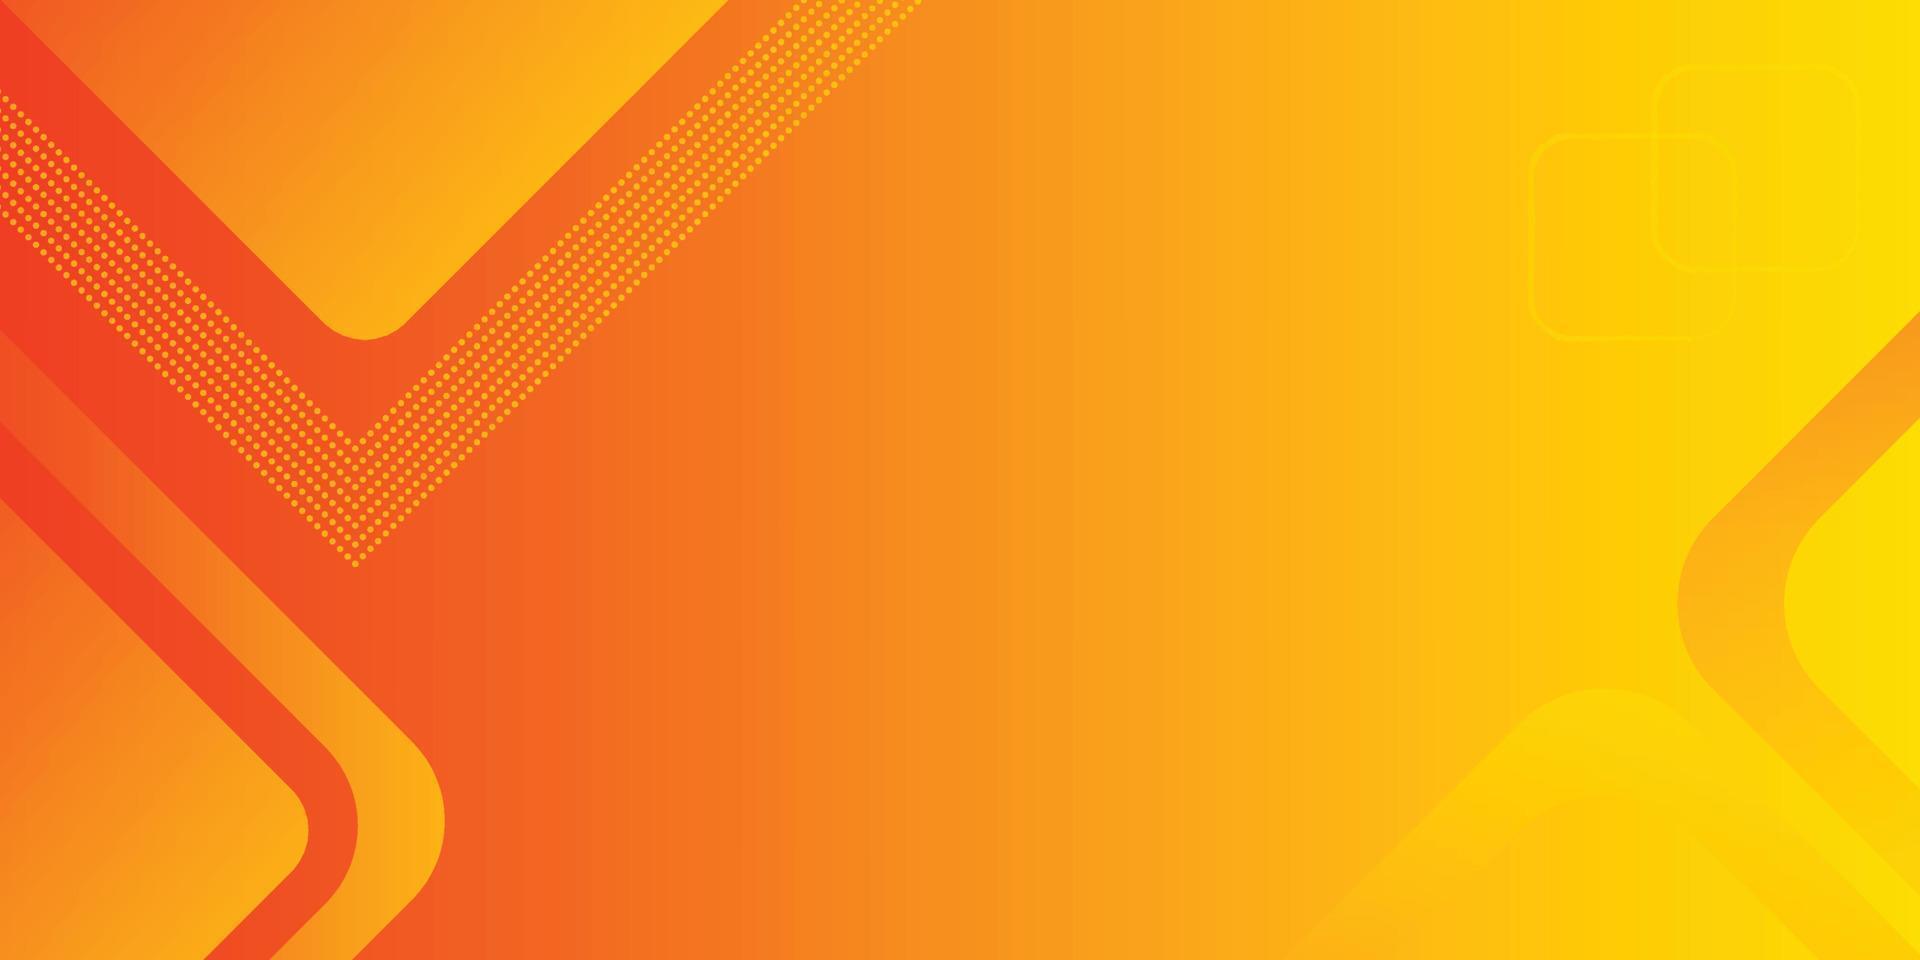 moderner orangefarbener abstrakter Hintergrund für Präsentationsdesign, orangefarbene abstrakte Verwendung für Unternehmen, Unternehmen, Institutionen, Poster, Vorlagen, Partys, Festlichkeiten, Seminare, Broschüren, eps10-Vektor, Illustration vektor